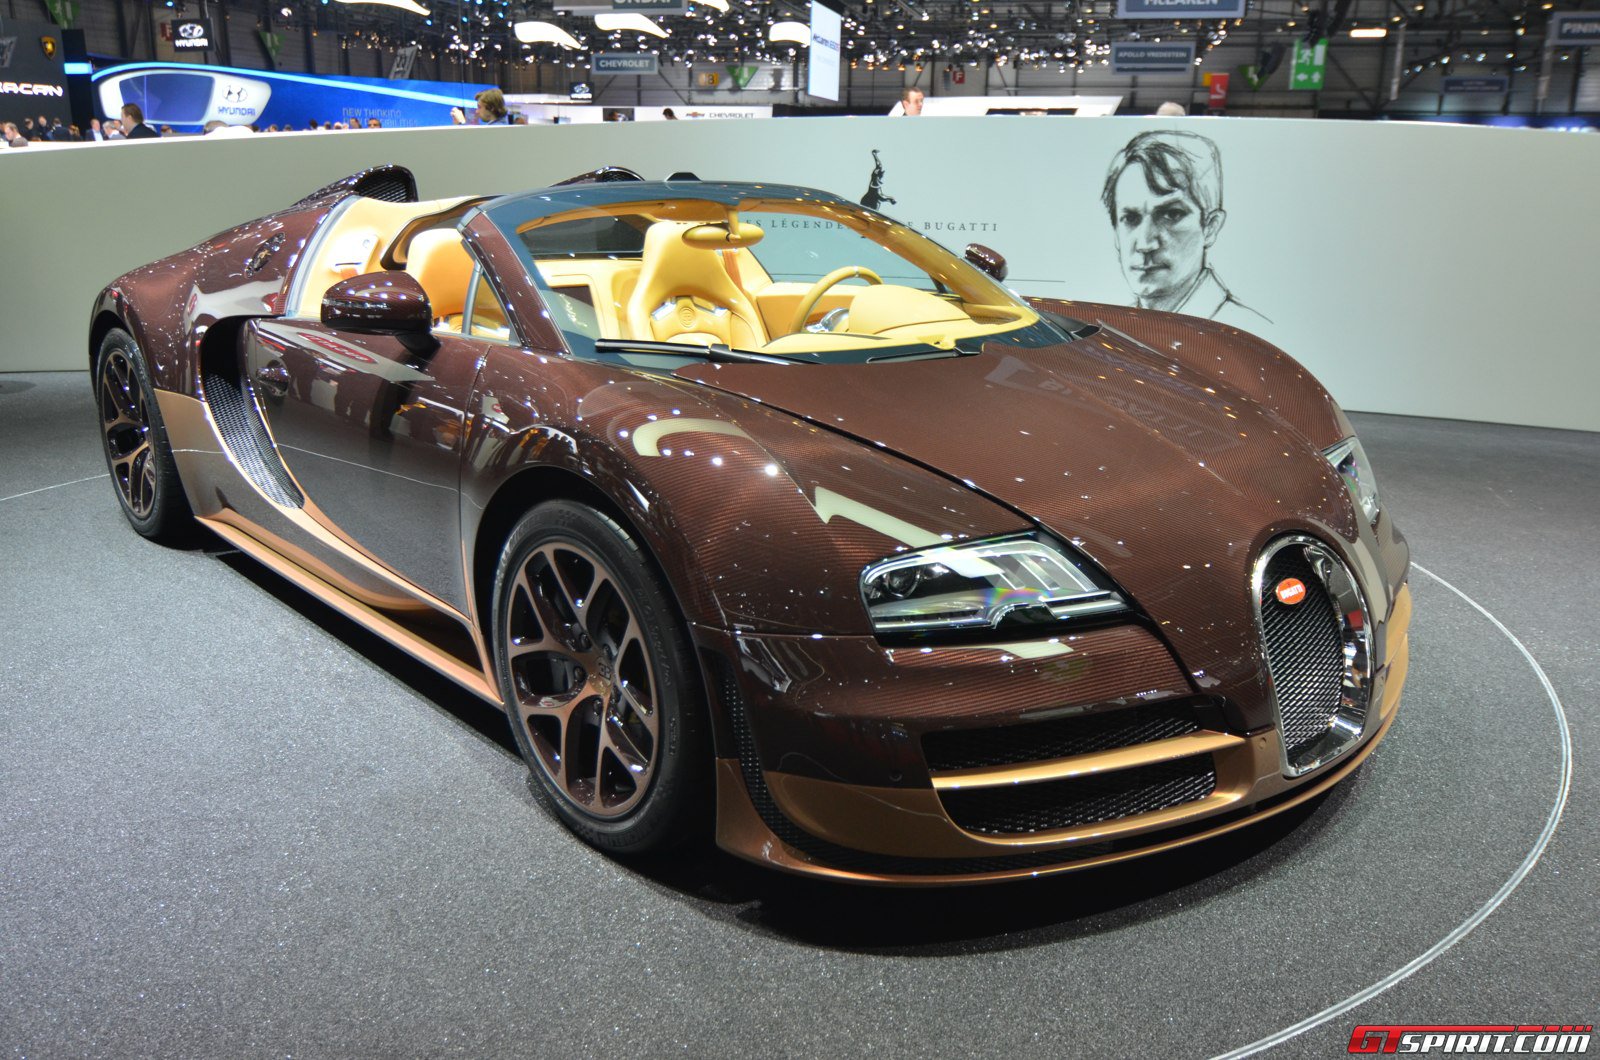 Tin tức - Hé lộ siêu xe “huyền thoại” sắp ra mắt của Bugatti